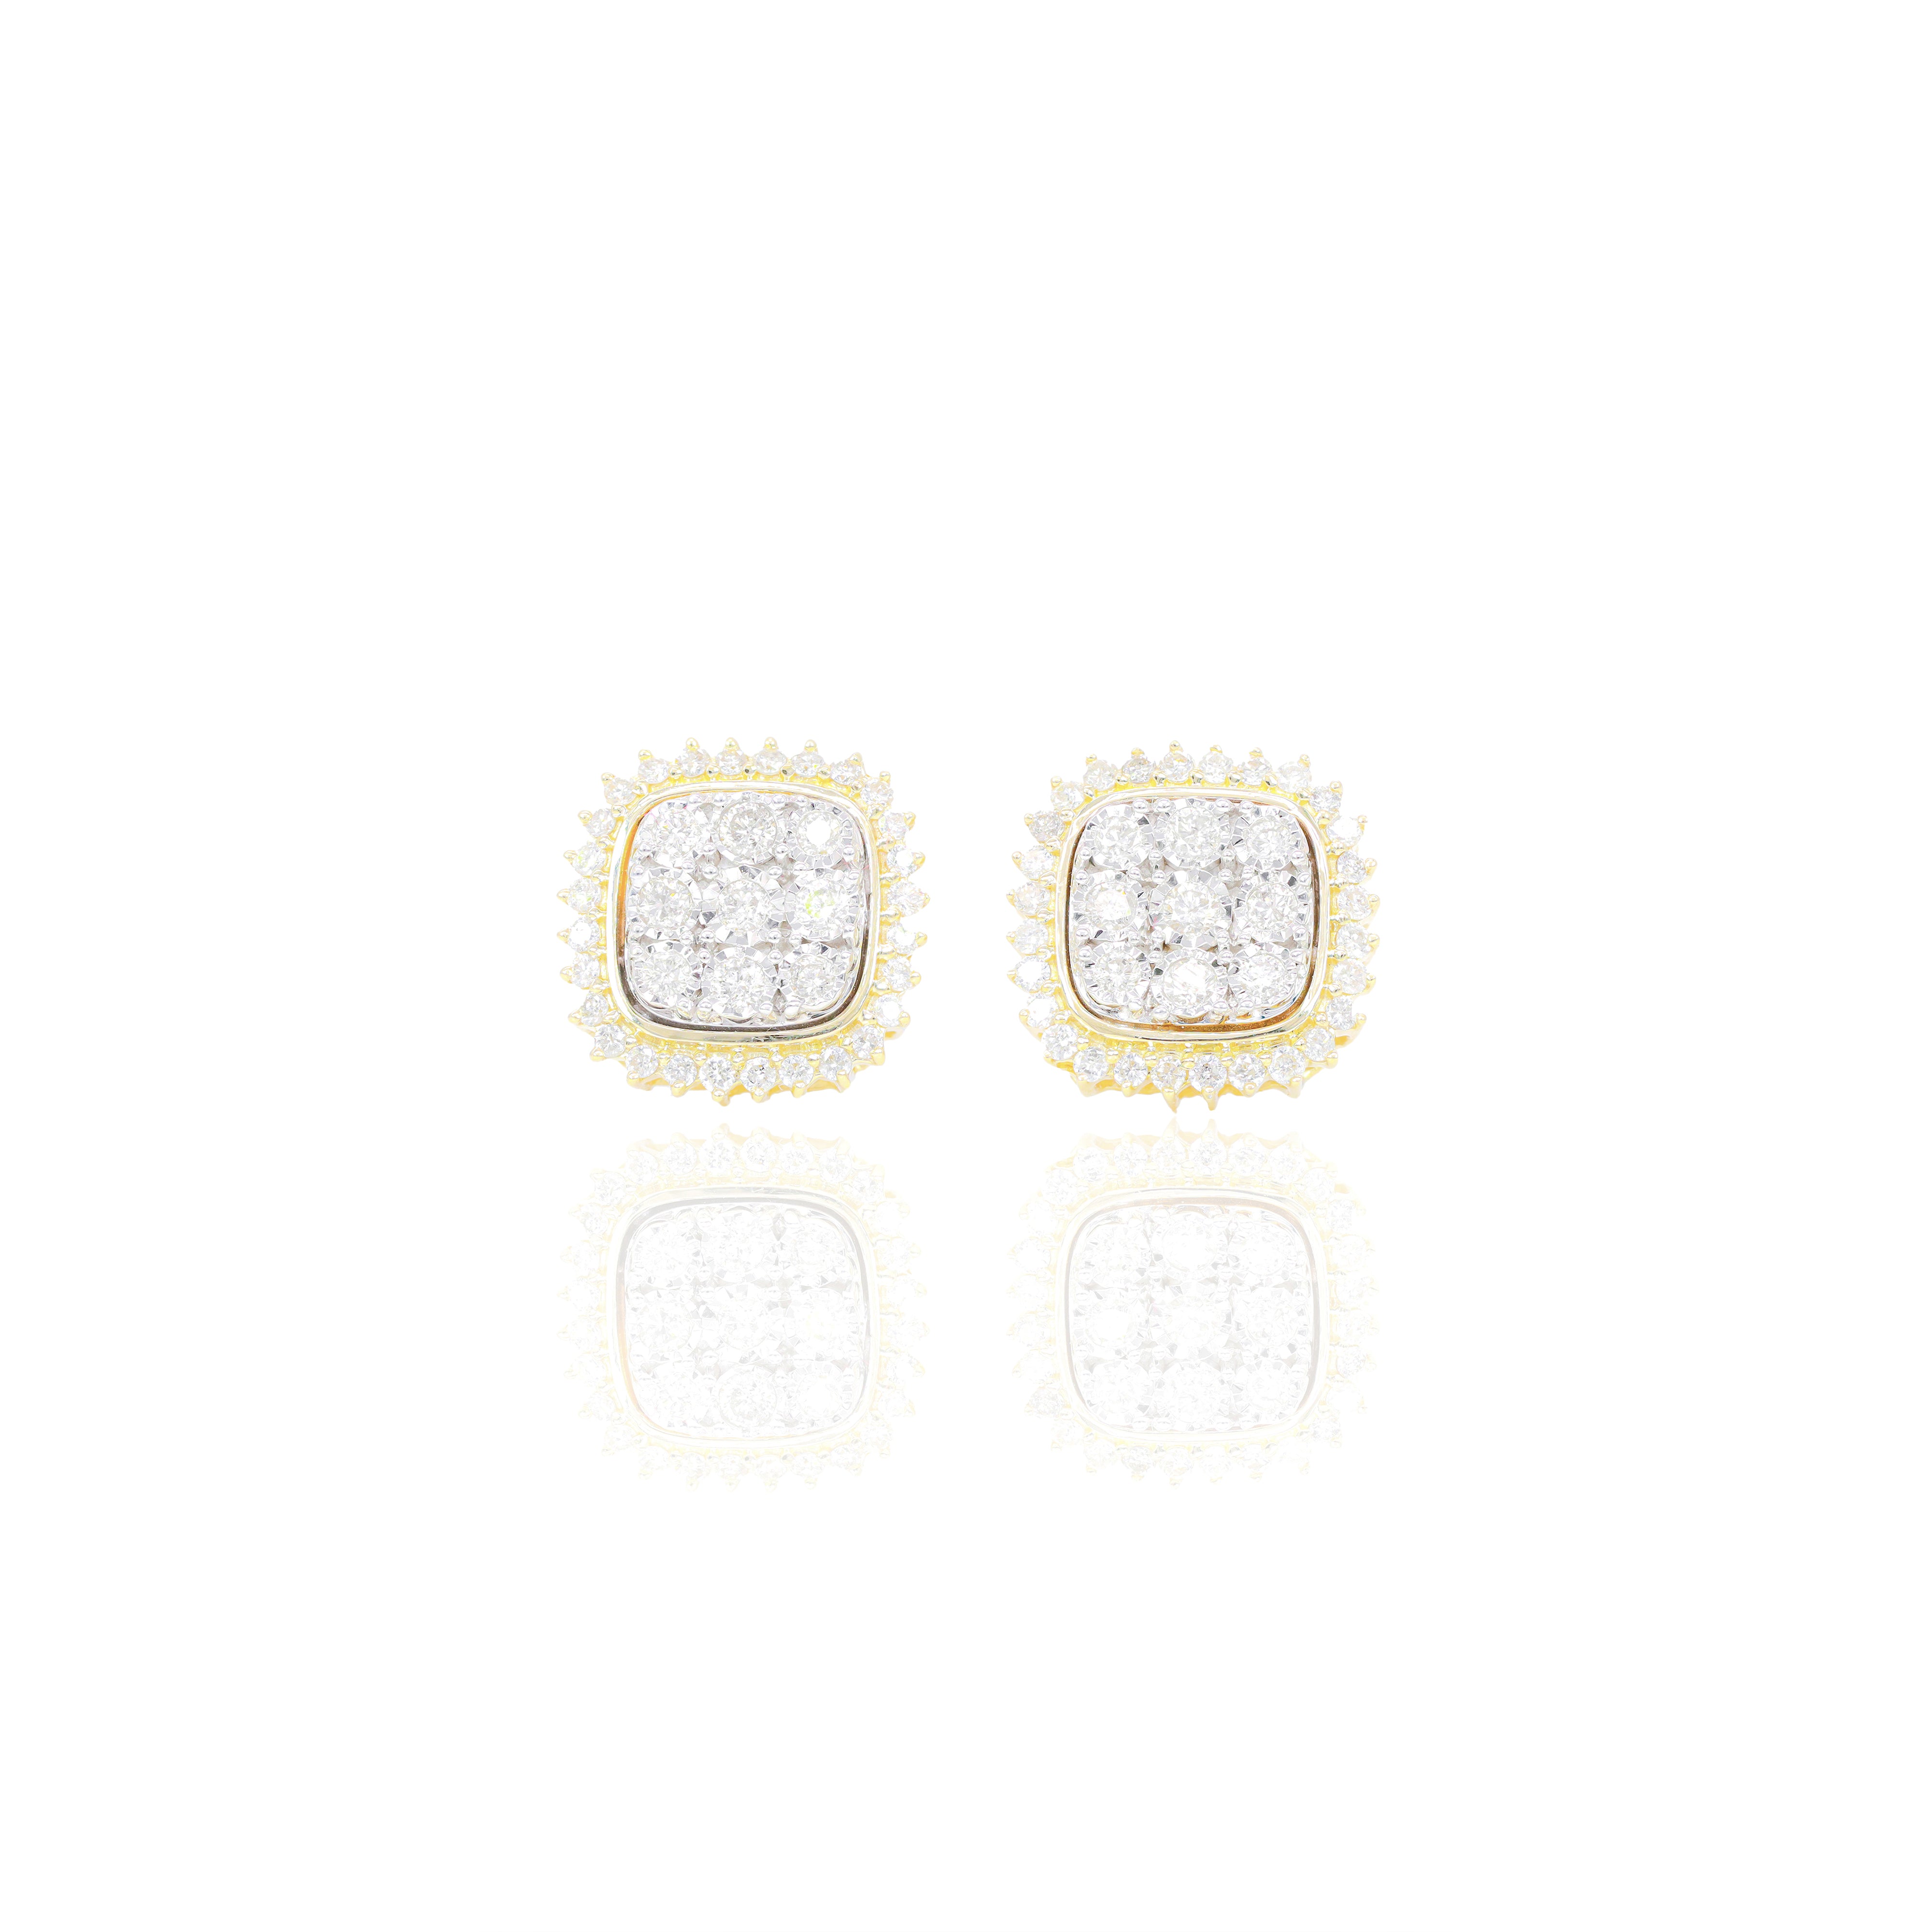 3 Row Jagged Diamond Earrings